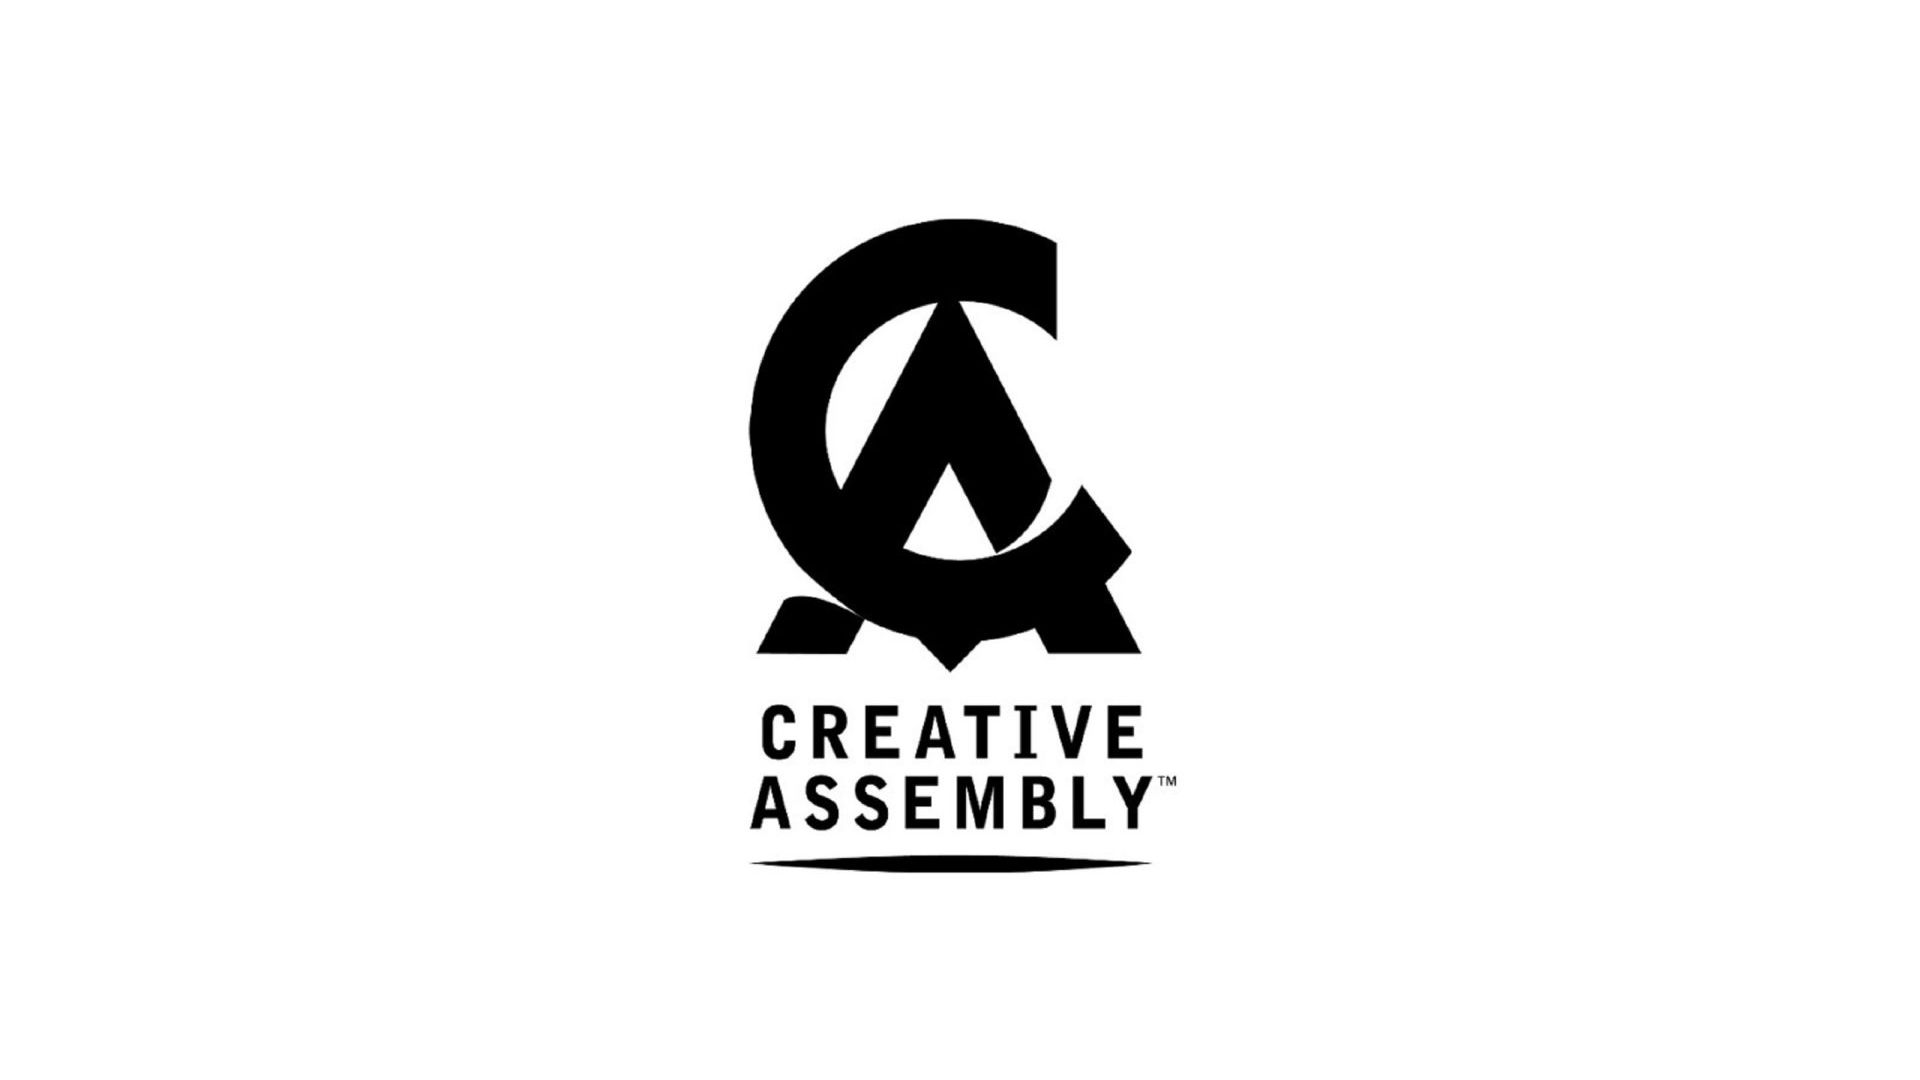 استودیو Creative Assembly مشغول کار روی چند بازی جدید است